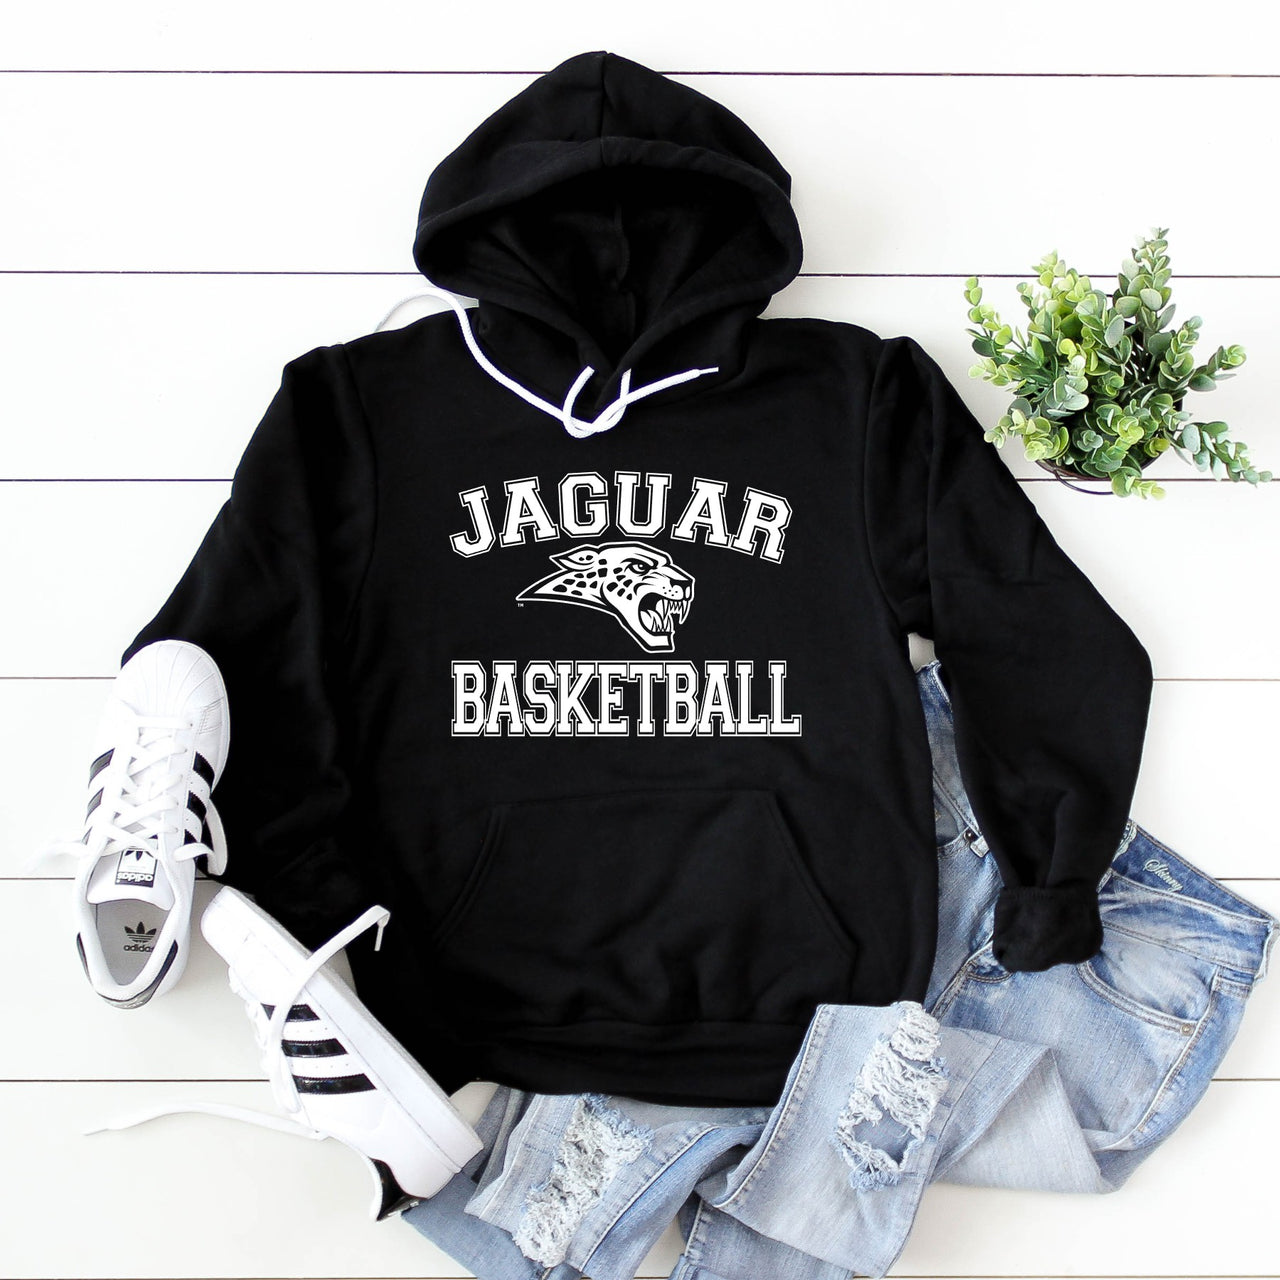 Jaguar Basketball - Unisex Hooded Pullover Sweatshirt